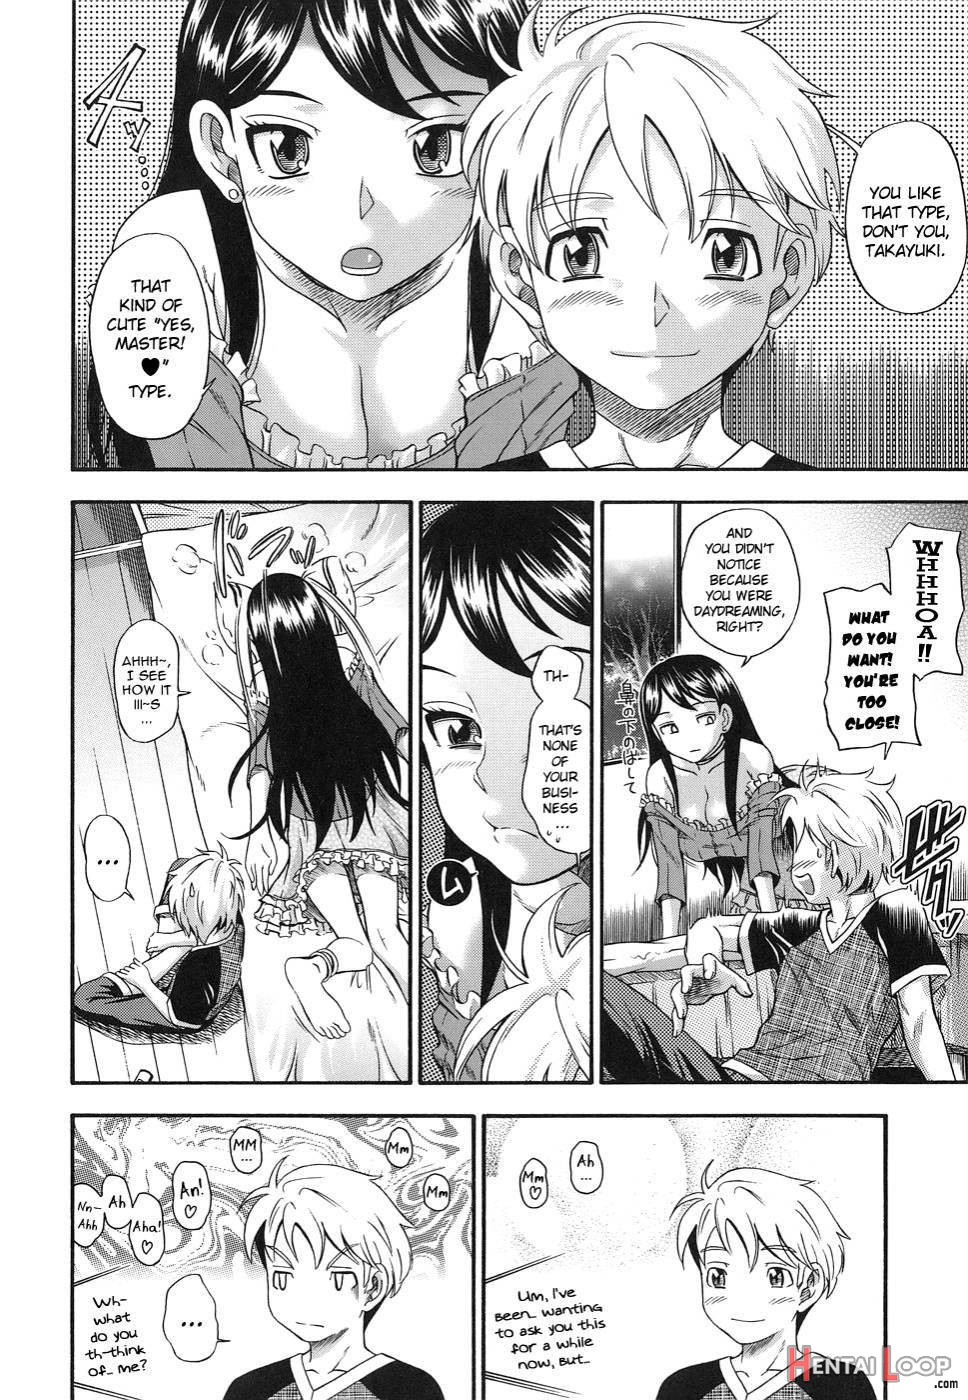 0 Kyori No Koi page 4